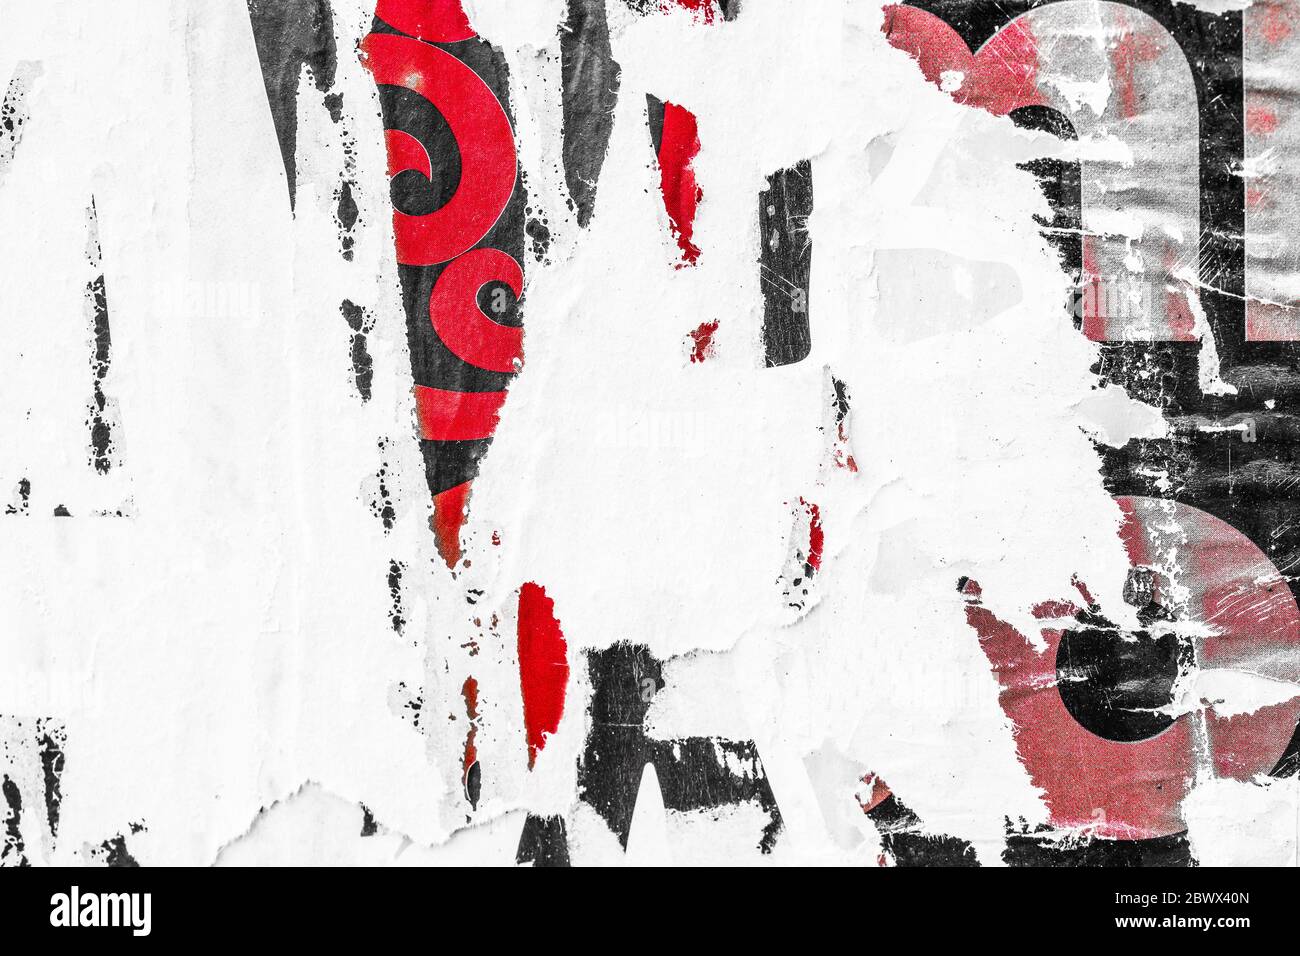 Alte zerrissene Poster Grunge Textur Hintergrund zerknittert Papier Hintergrund Plakat Oberfläche / Urban Street Poster Stockfoto